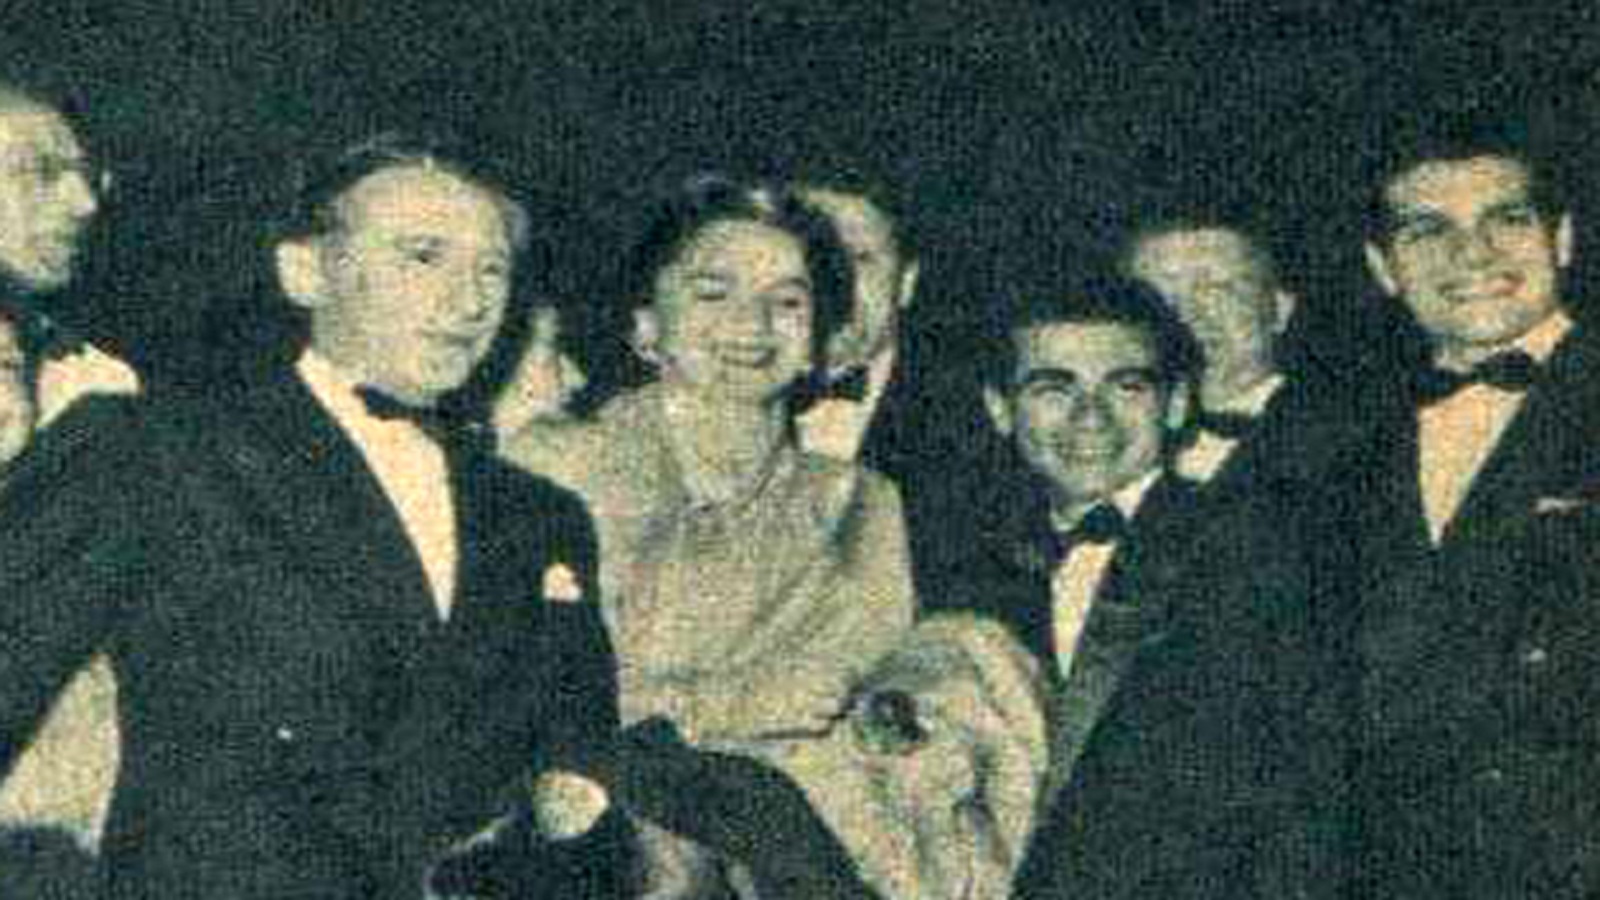 مع جان كوكتو وعمر الشريف عند عرض "صراع في الوادي" في مهرجان كان 1954.